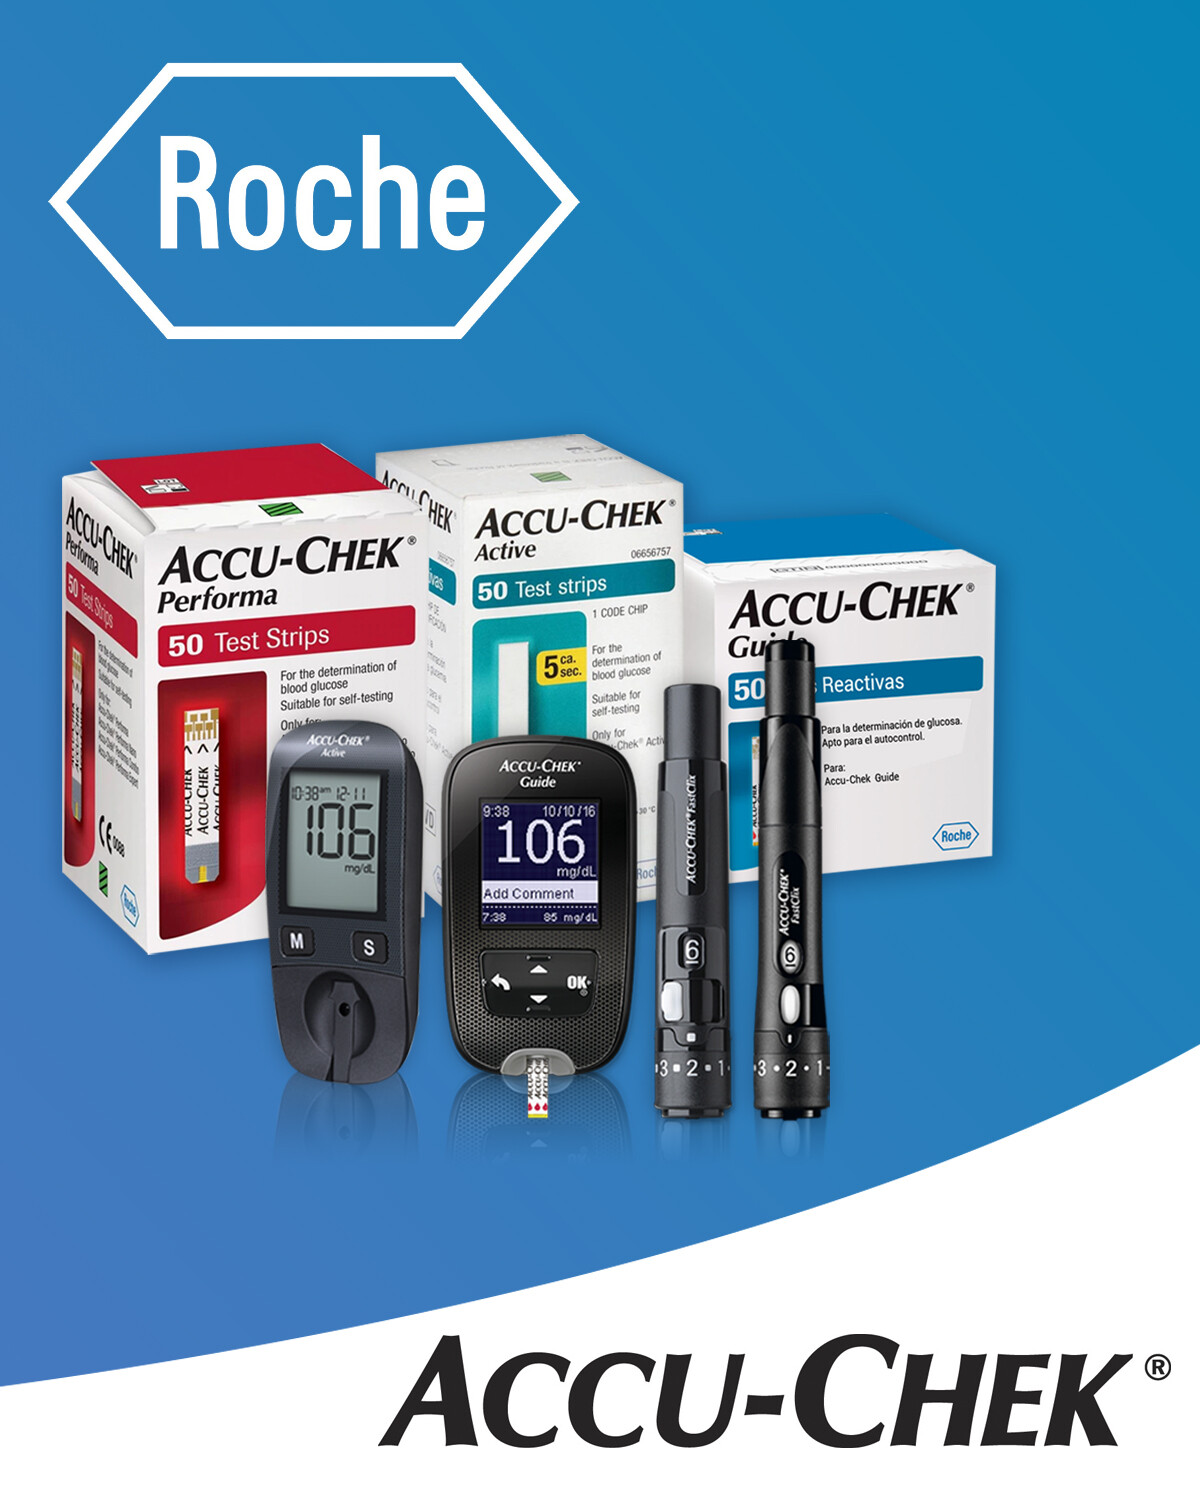 Medidor Glucosa ACCU-CHEK Guide